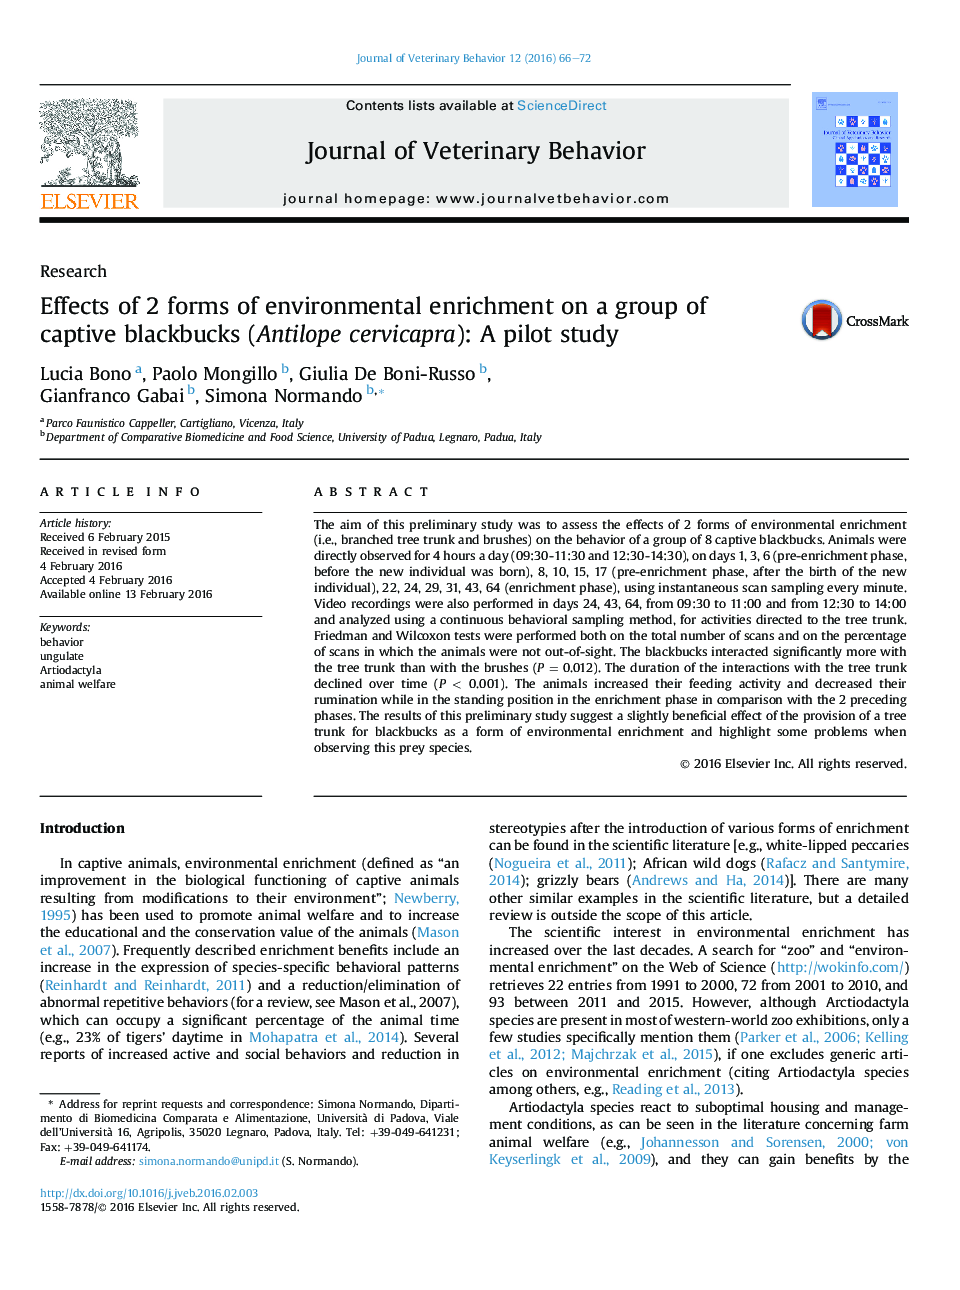 اثر 2 فرم از غنی سازی زیست محیطی در یک گروه از blackbucks اسیر (Antilope cervicapra): یک مطالعه مقدماتی